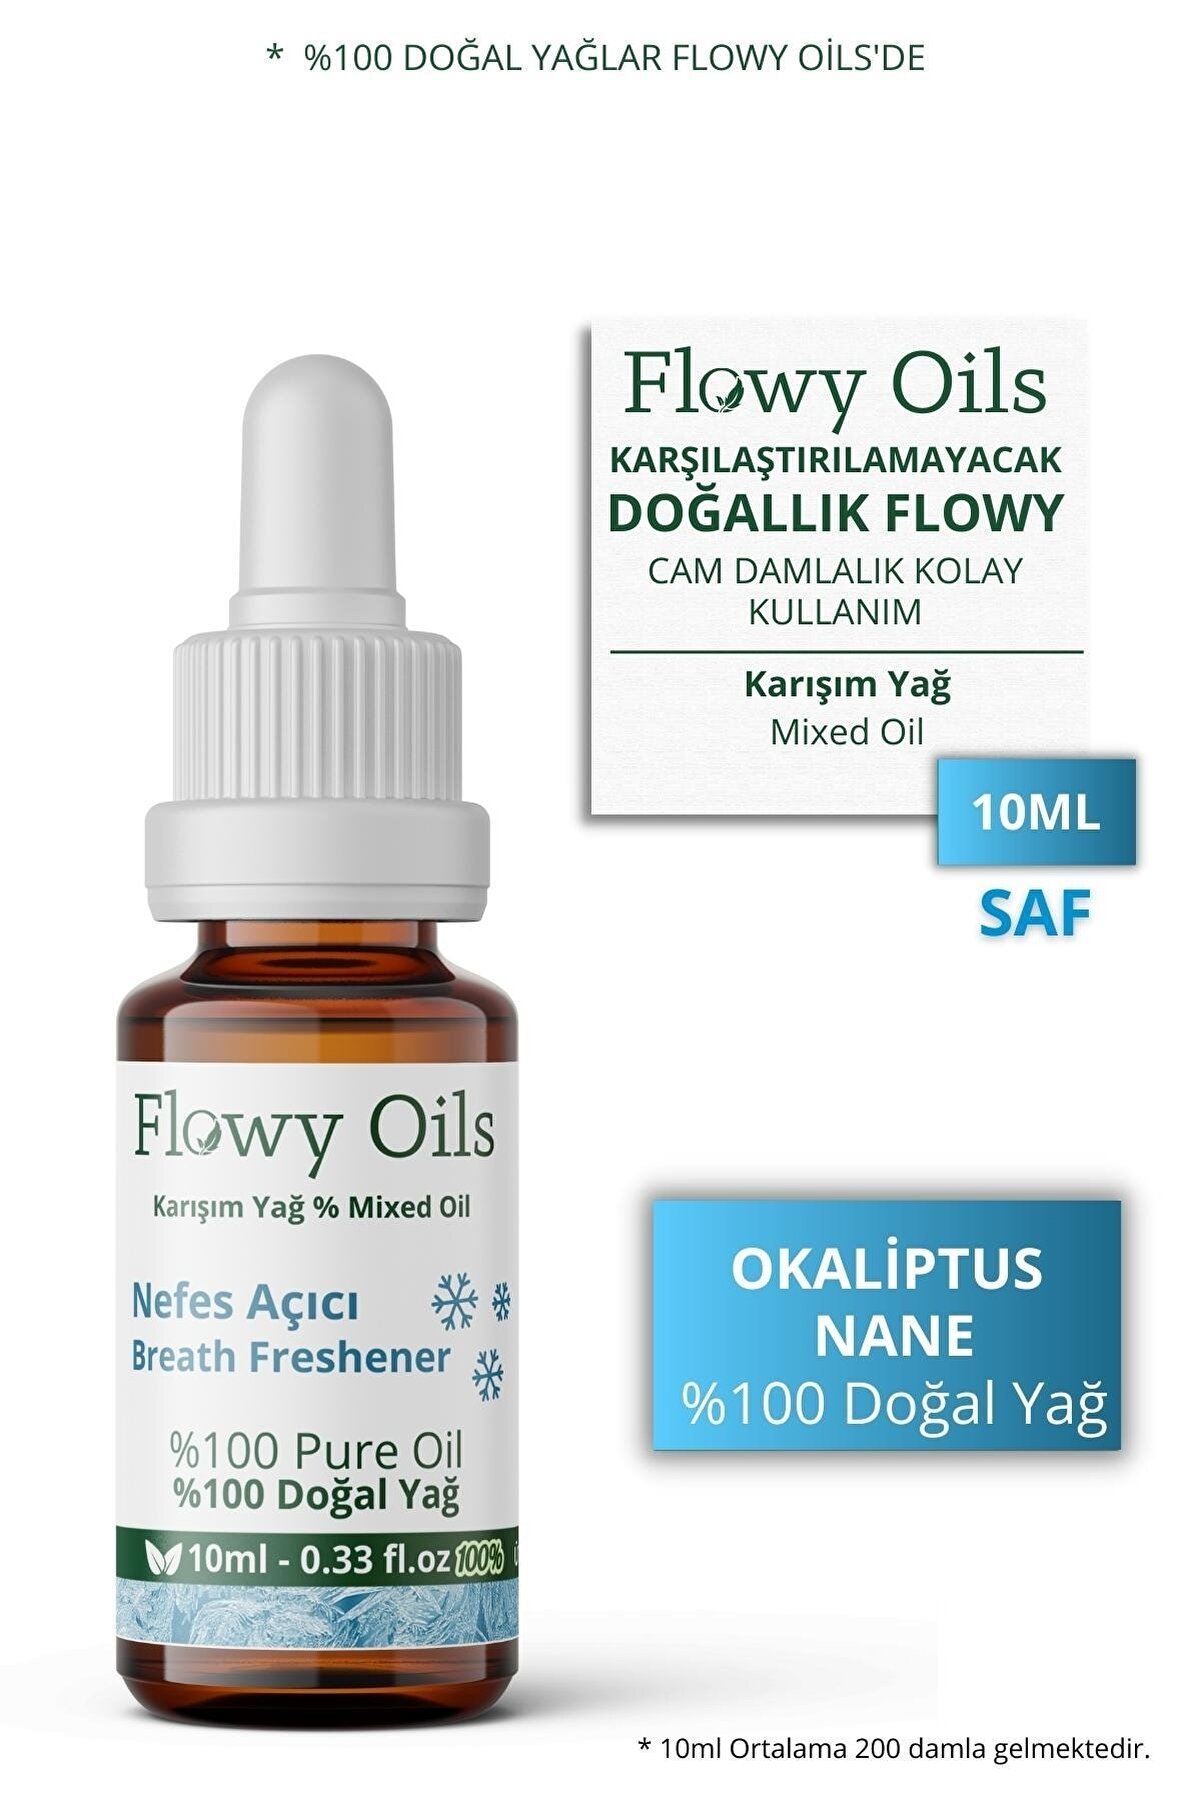 Flowy Oils Nefes Açıcı Karşım Uçucu Yağ Okaliptüs/nane %100 Doğal Bitkisel Uçucu Yağ Breath Freshener Oil 10ml